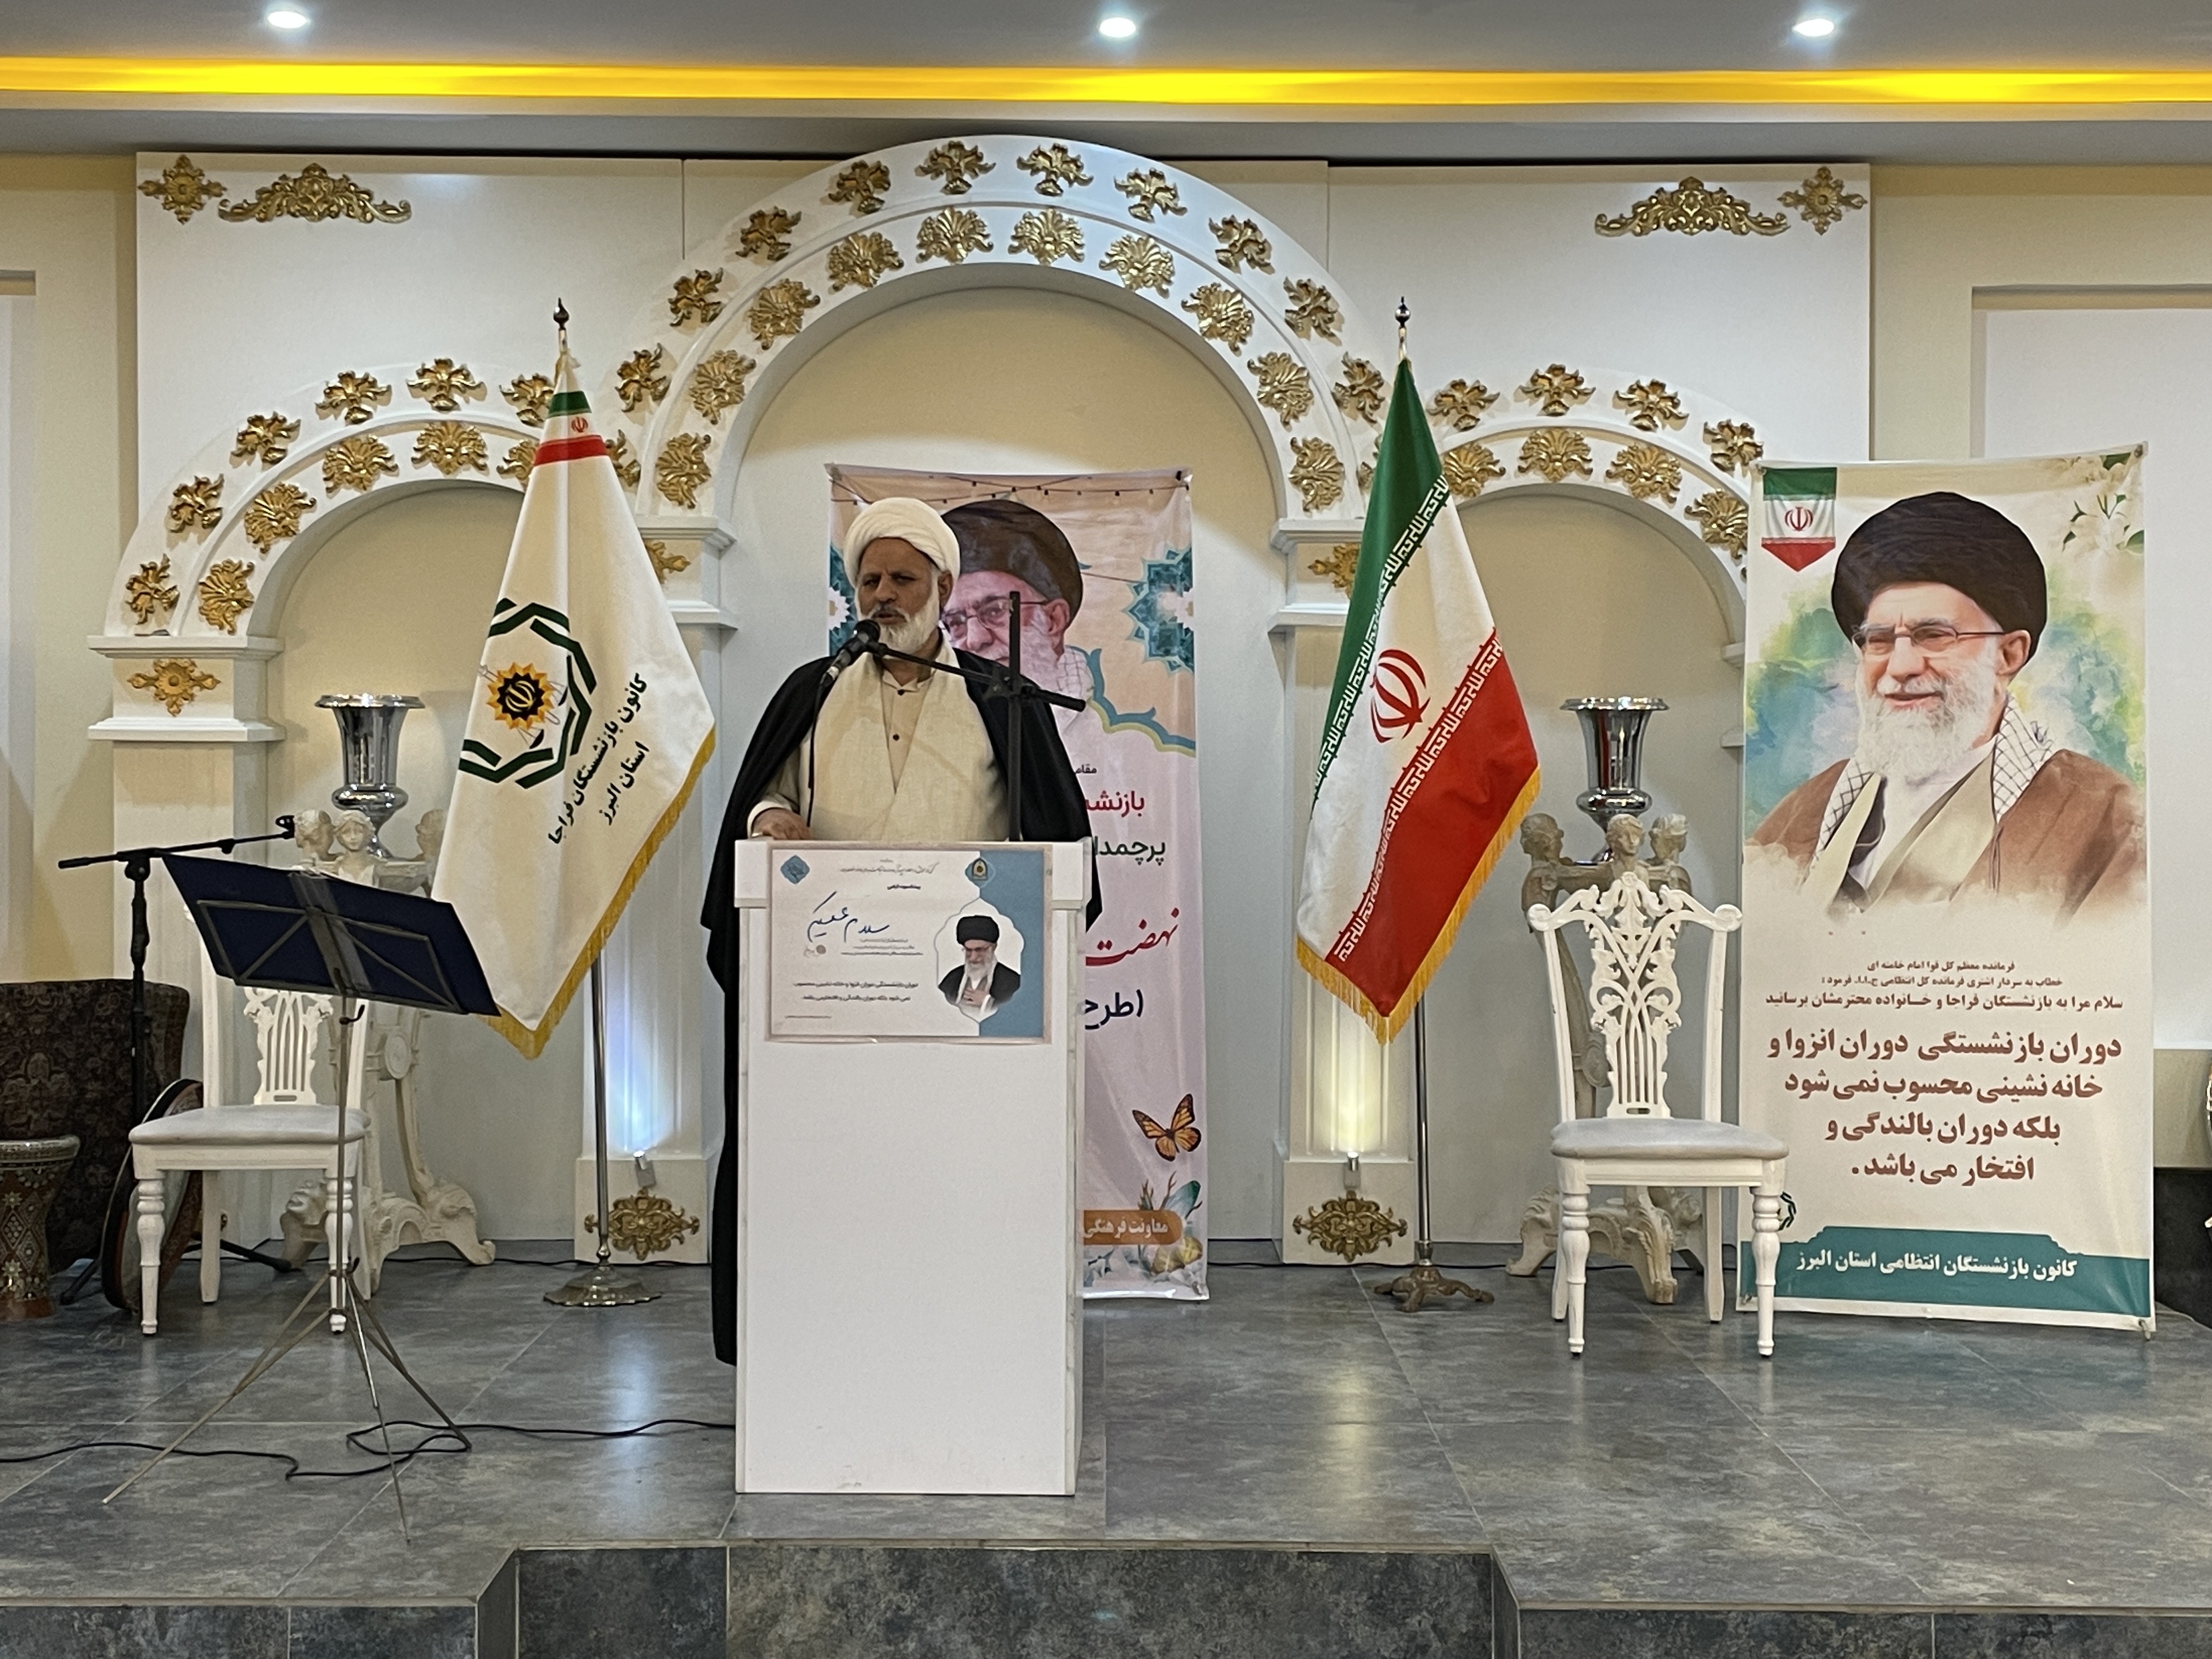 به مناسبت مبعث پیامبر اکرم(ص) و دهه مبارک فجر مراسم ضیافتی با حضور 57عضو کانون به همراه خانواده در استان البرز برگزار شد.